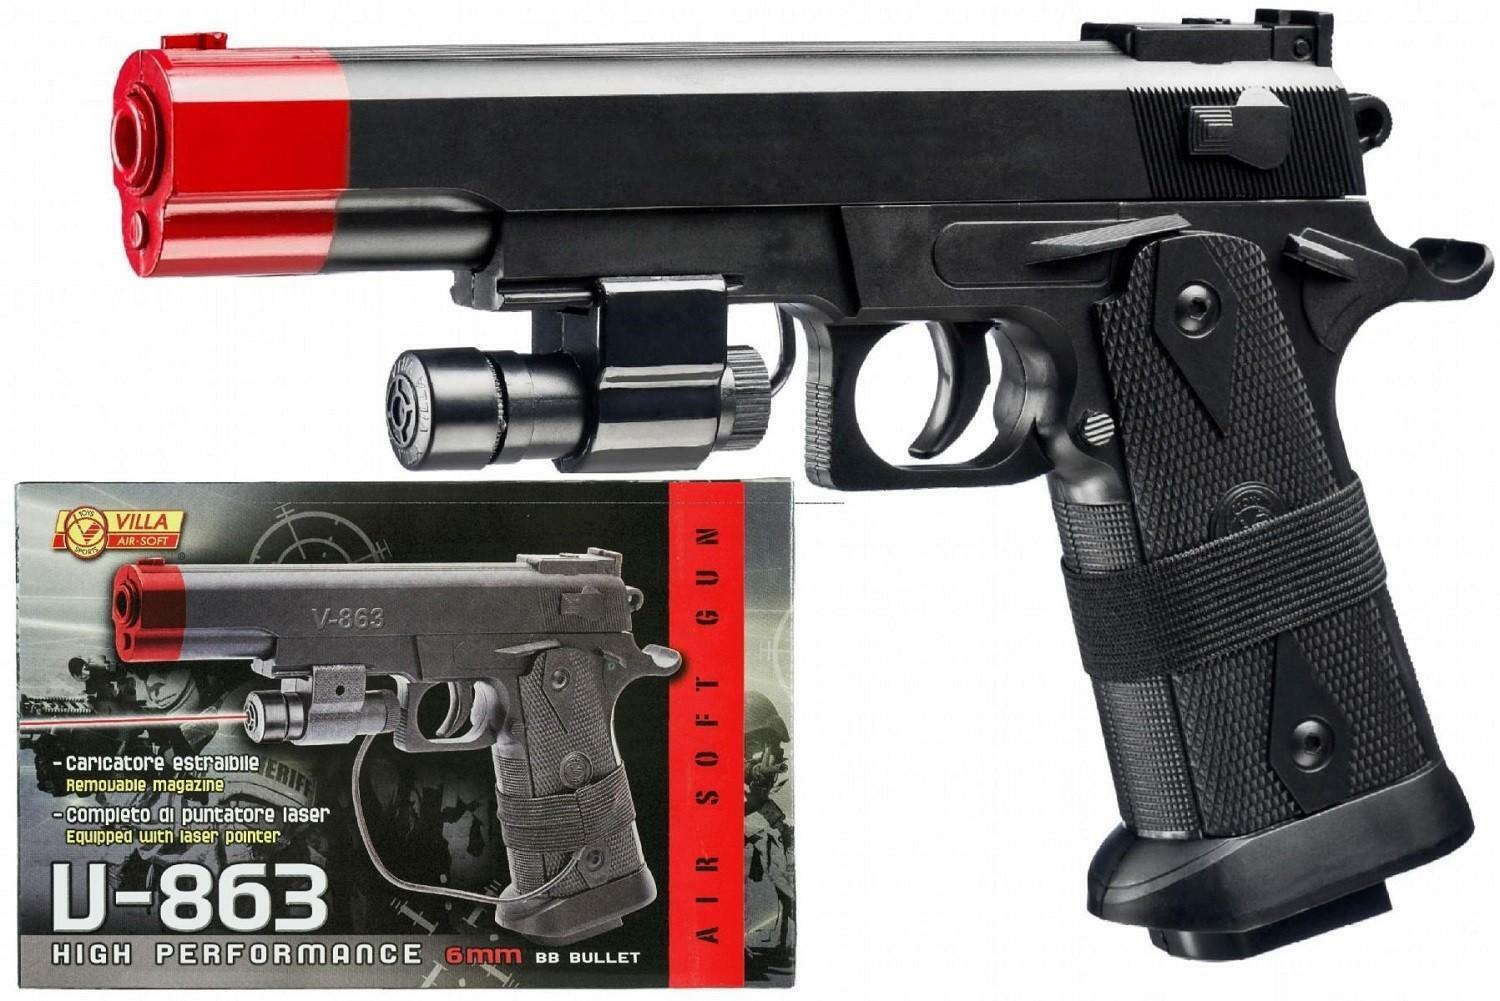 villa giocattoli air soft pistola v-863 cal. 6 mm